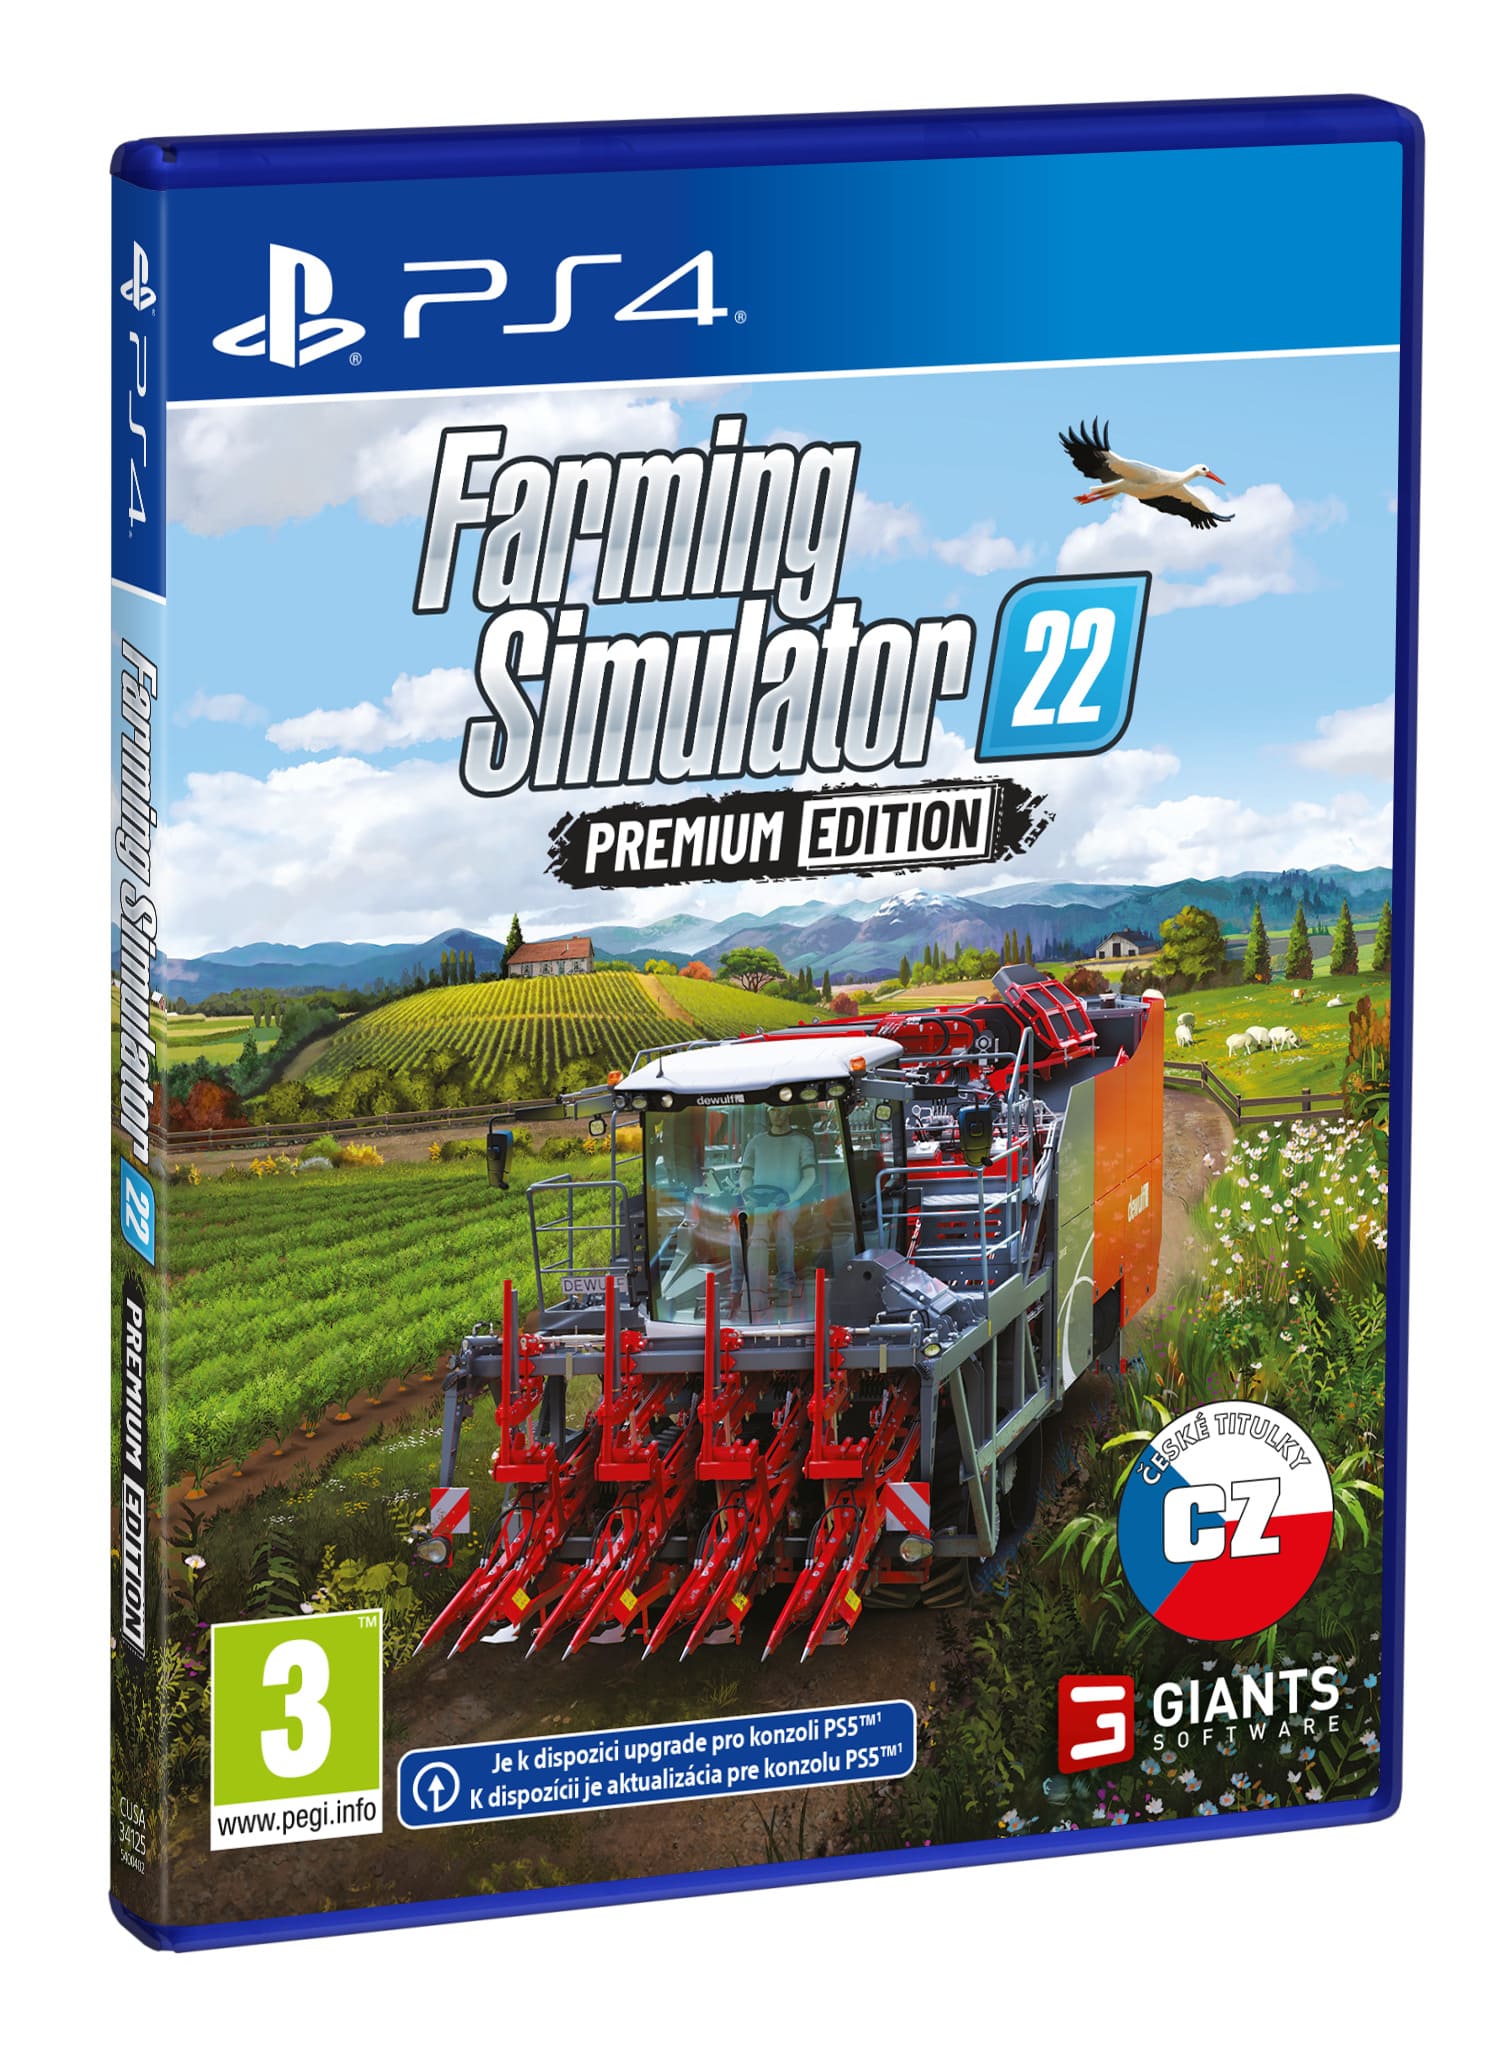 PS4 - Farming Simulator 22: Premium Edition3 